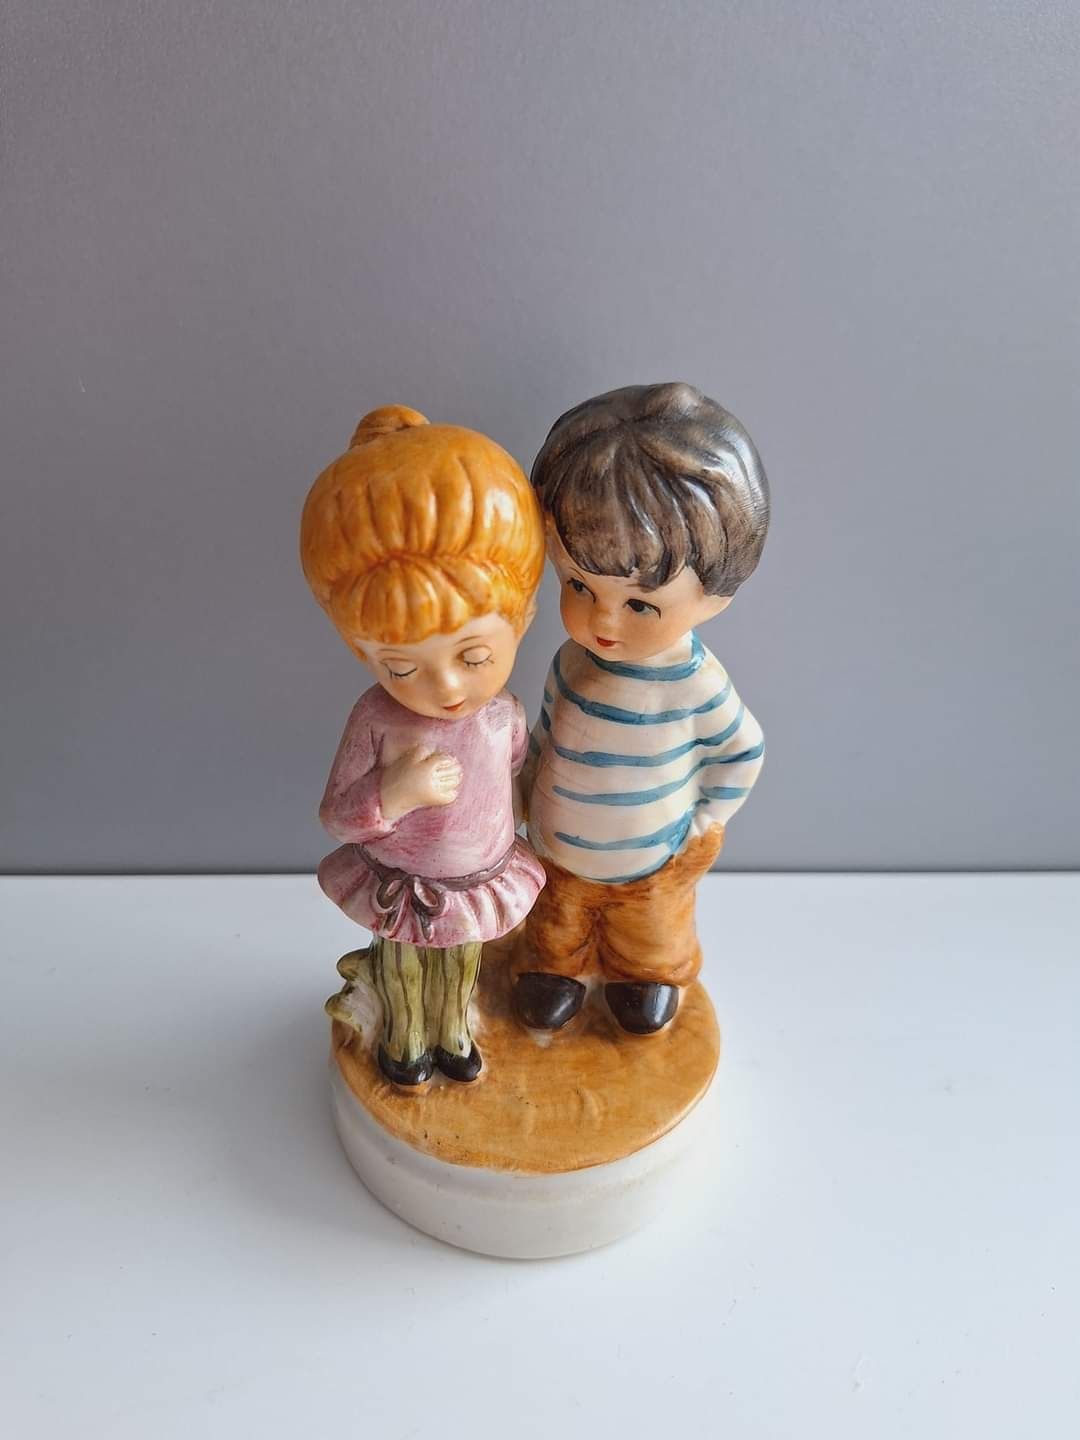 Śliczna figurka chłopca i dziewczynki, wykonana z delikatnej porcelany